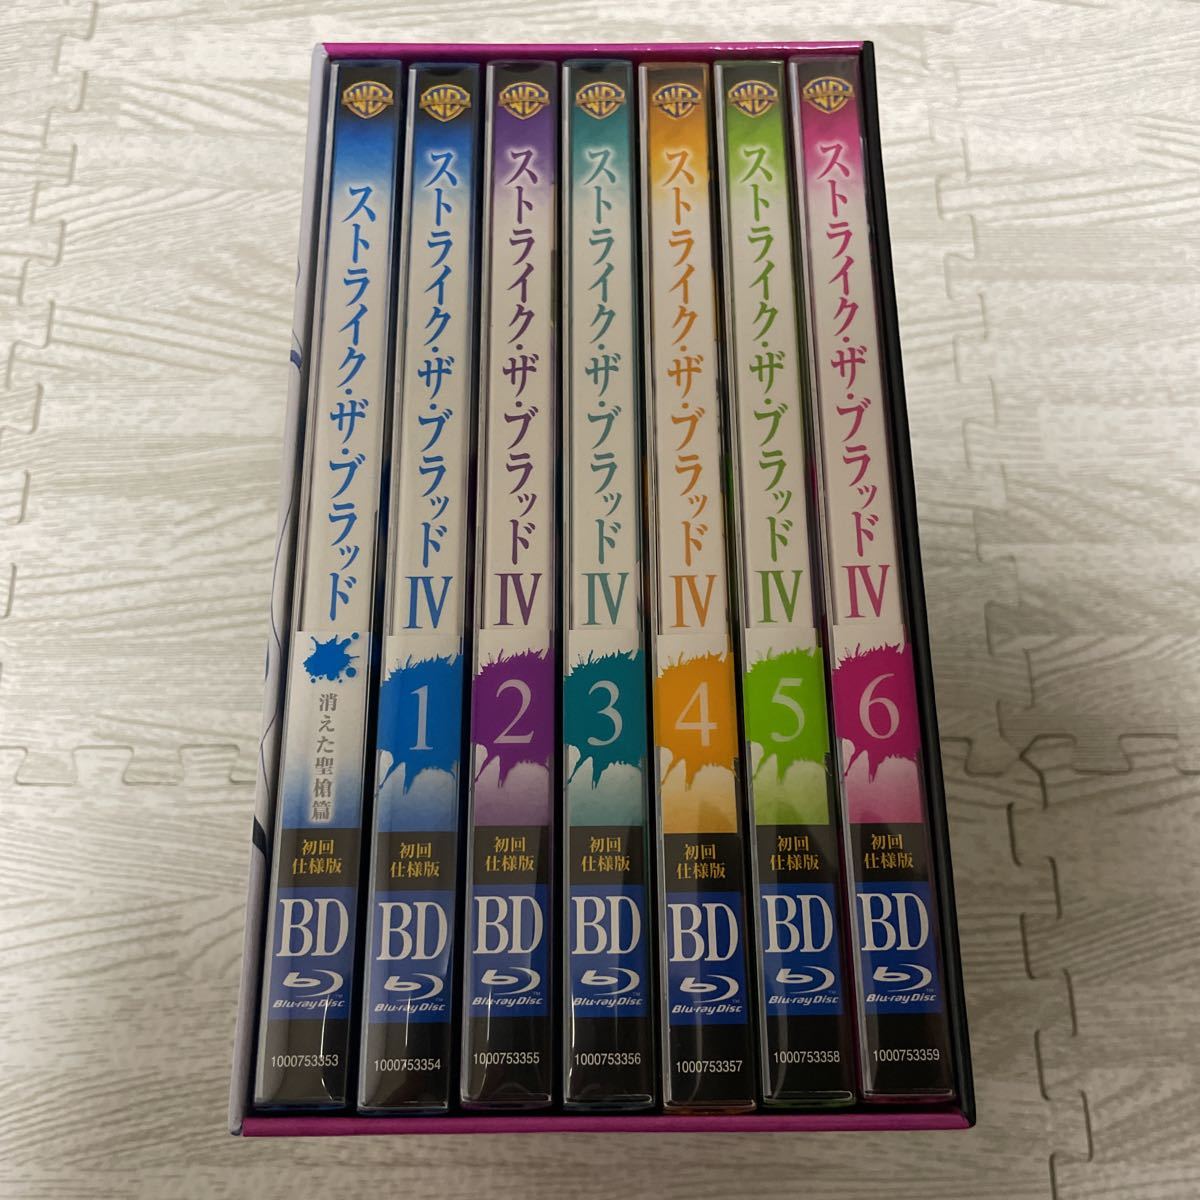 ストライク・ザ・ブラッド IV OVA Blu-ray ＋スペシャルOVA 消えた聖槍篇 全7巻セット 全巻セット ゲーマーズ全巻購入特典  全巻収納BOX付